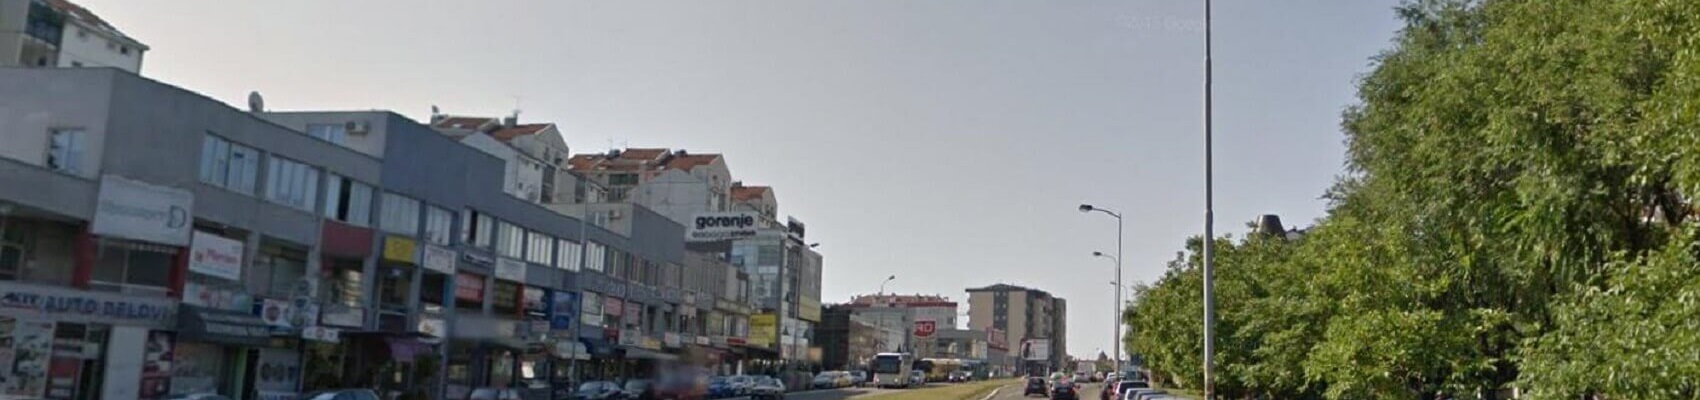 Rent a car Julino brdo, cars rental: Zim, Belgrade